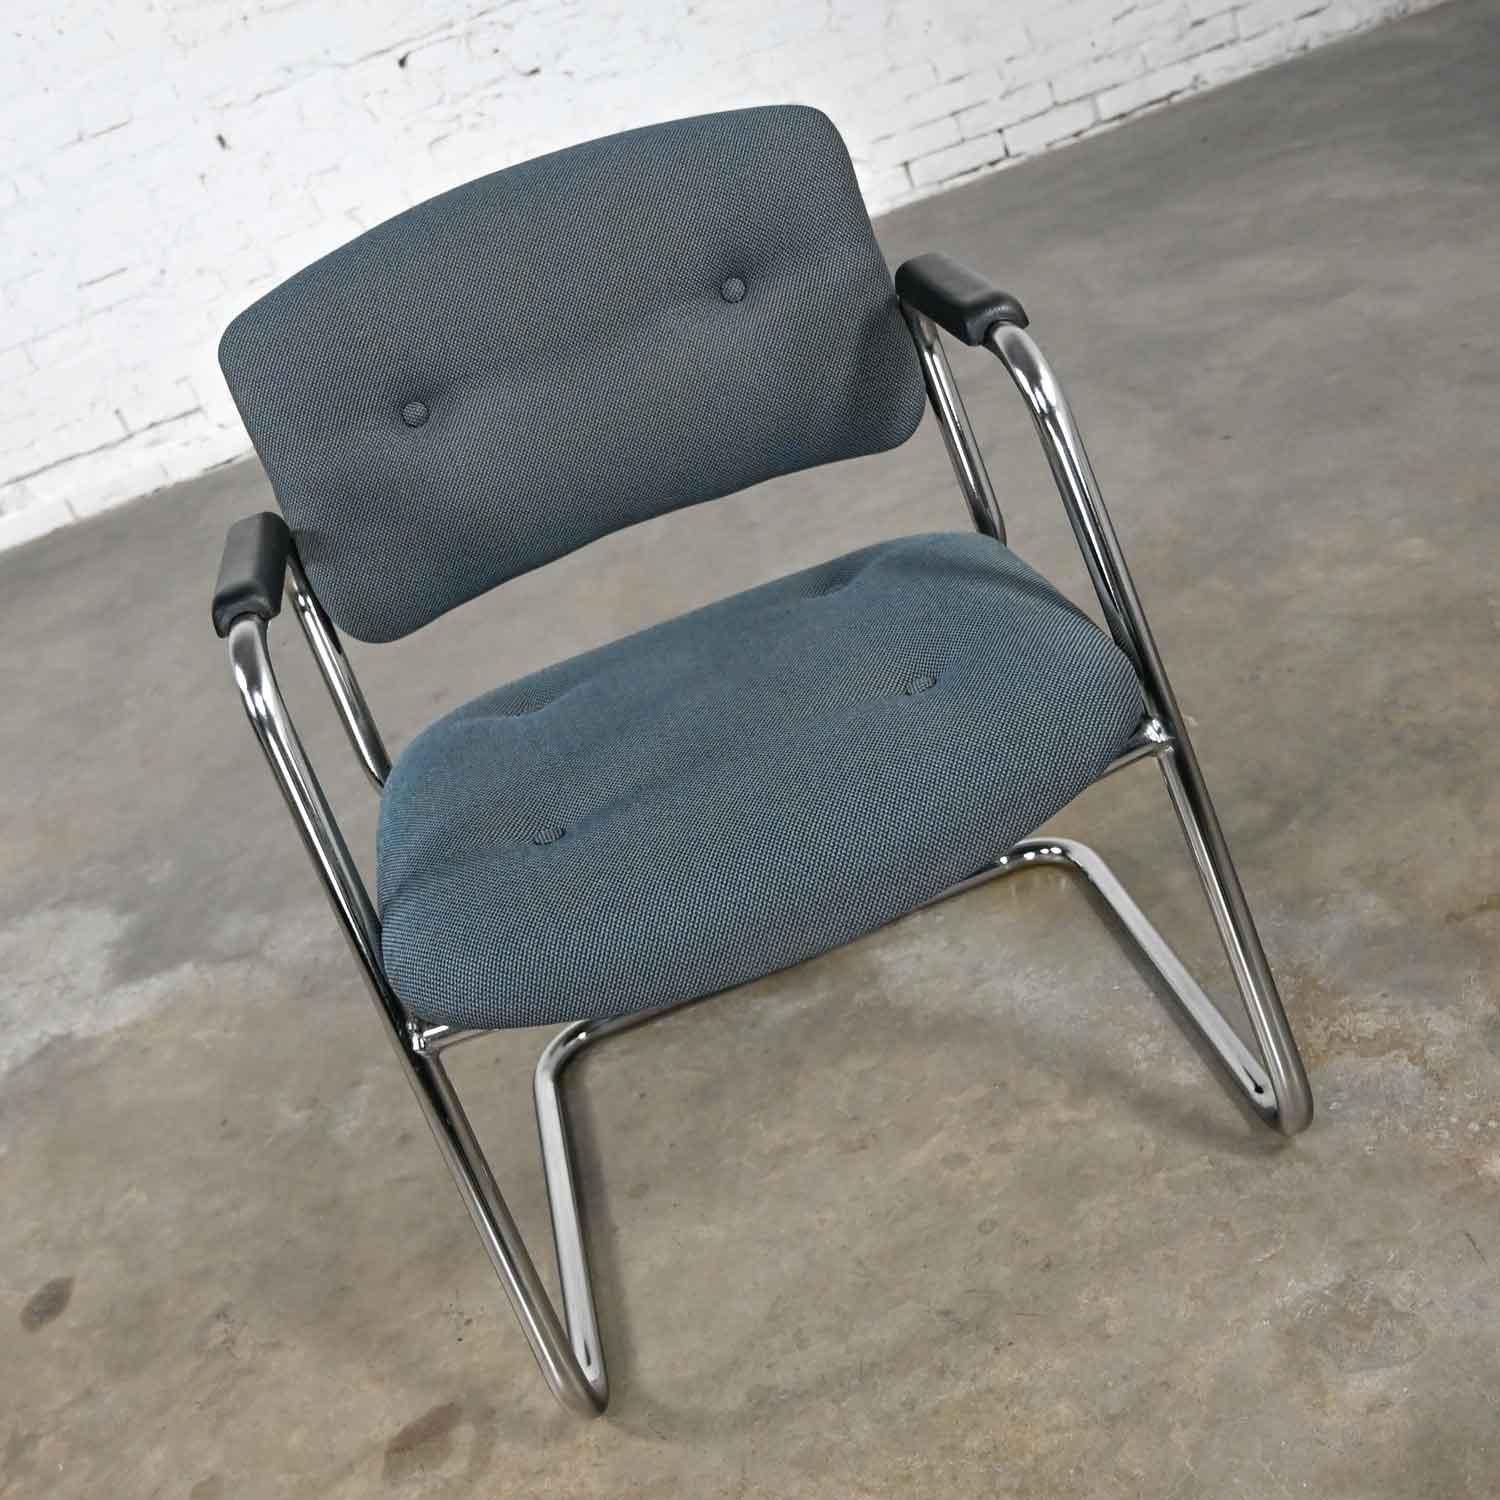 Tolle grau-blaue & verchromte Vintage-Freischwinger von United Chair Company im Stil von Steelcase. Er besteht aus einem verchromten Freischwingergestell, Armlehnen aus schwarzem Kunststoff und dem originalen teal-grauen Tweed-Stoff mit